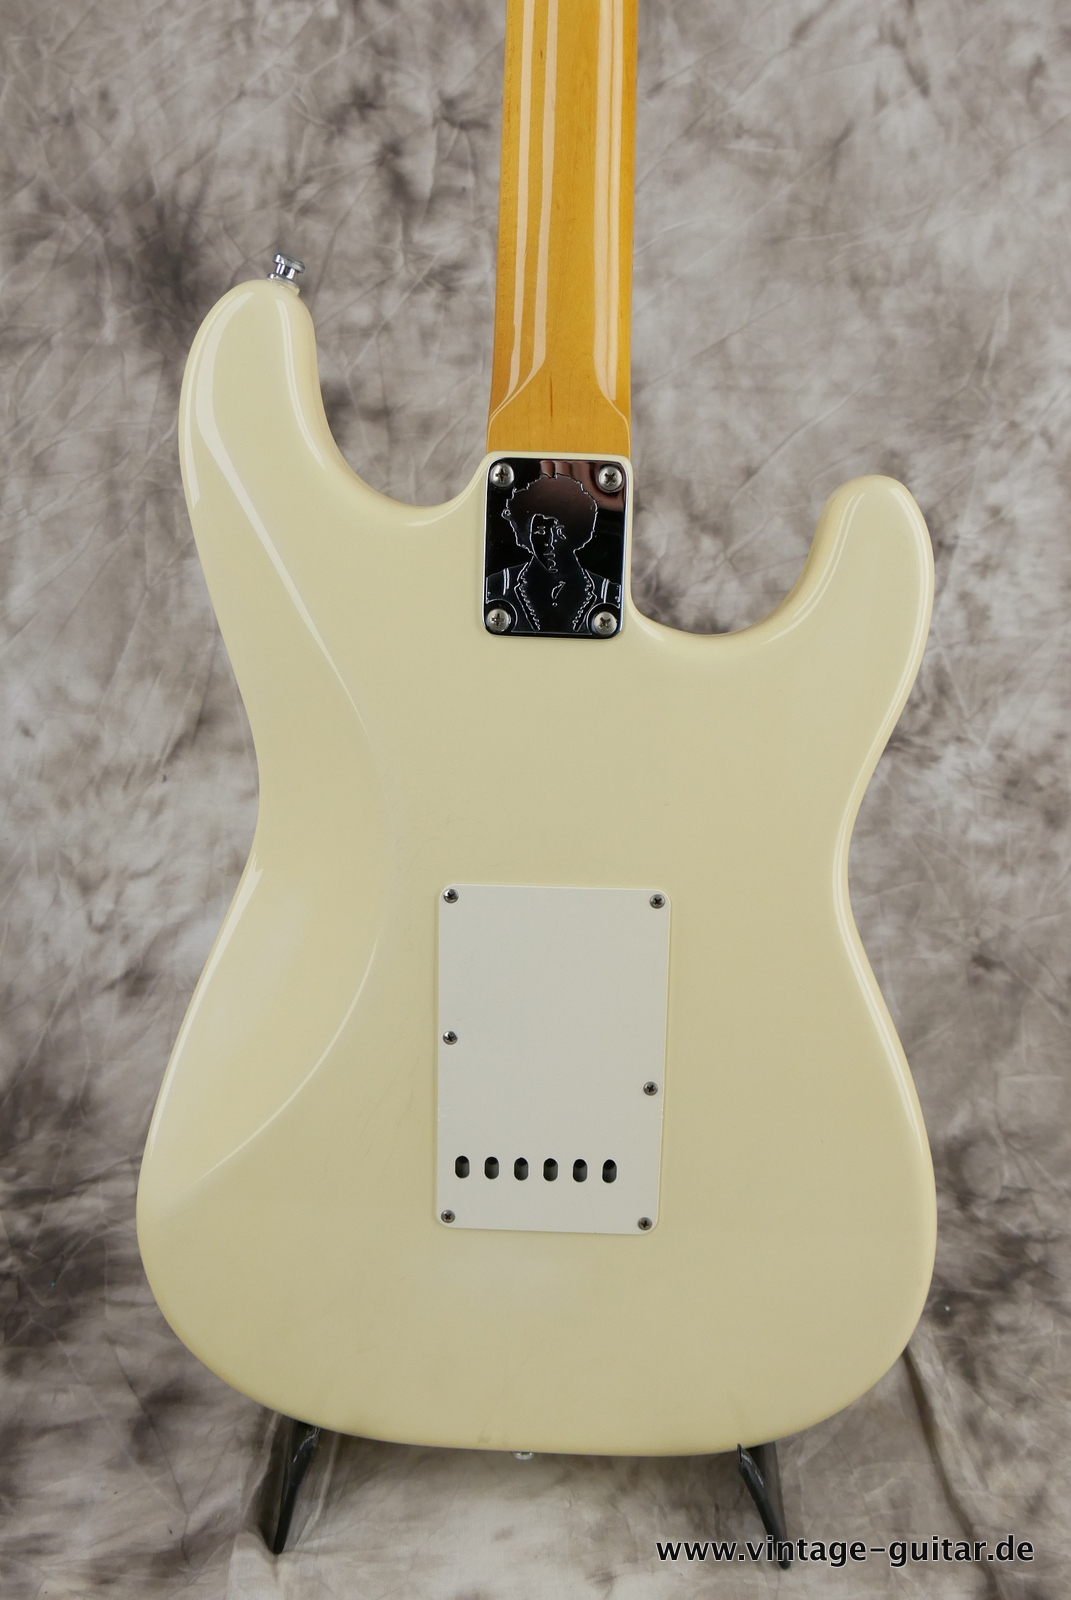 Fender_Stratocaster_Jimi_Hemdrix_Tribute_1997_olympic_white-008.JPG